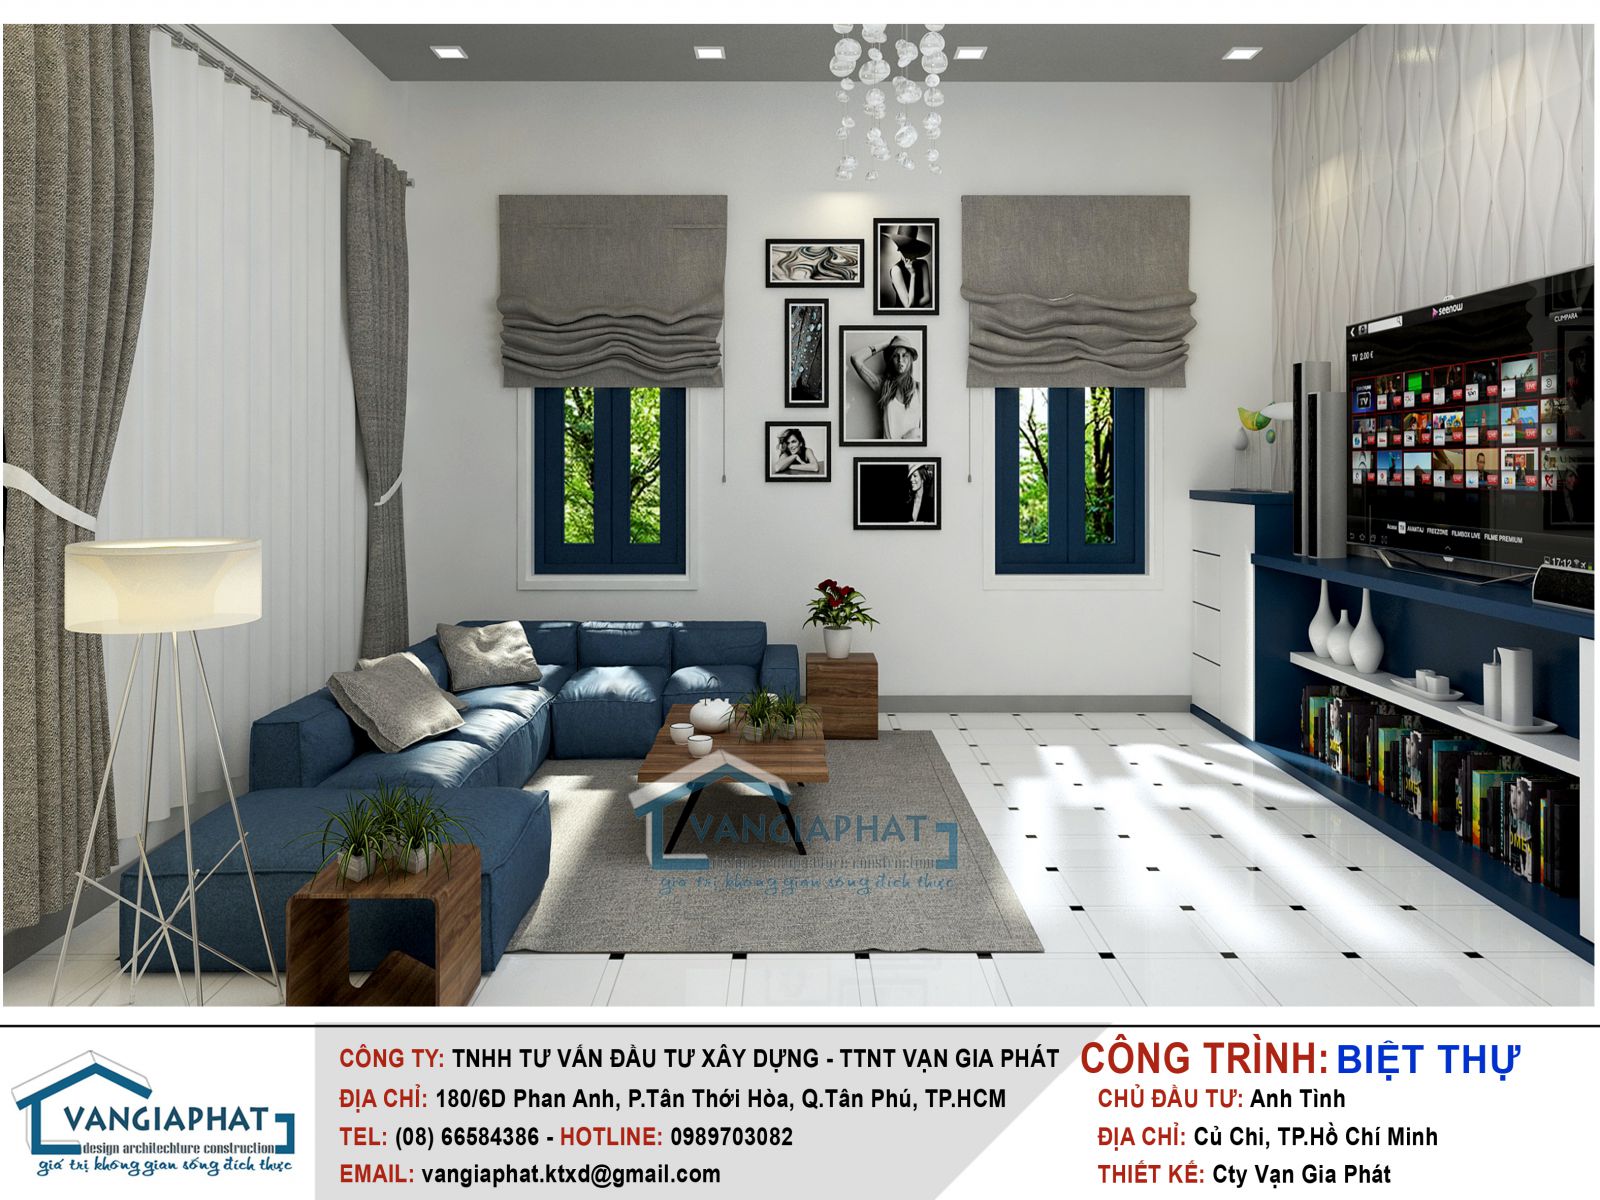 Sử dụng tông màu xanh dương làm điểm nhấn cho phòng khách, kết hợp với cửa và nội thất cùng màu